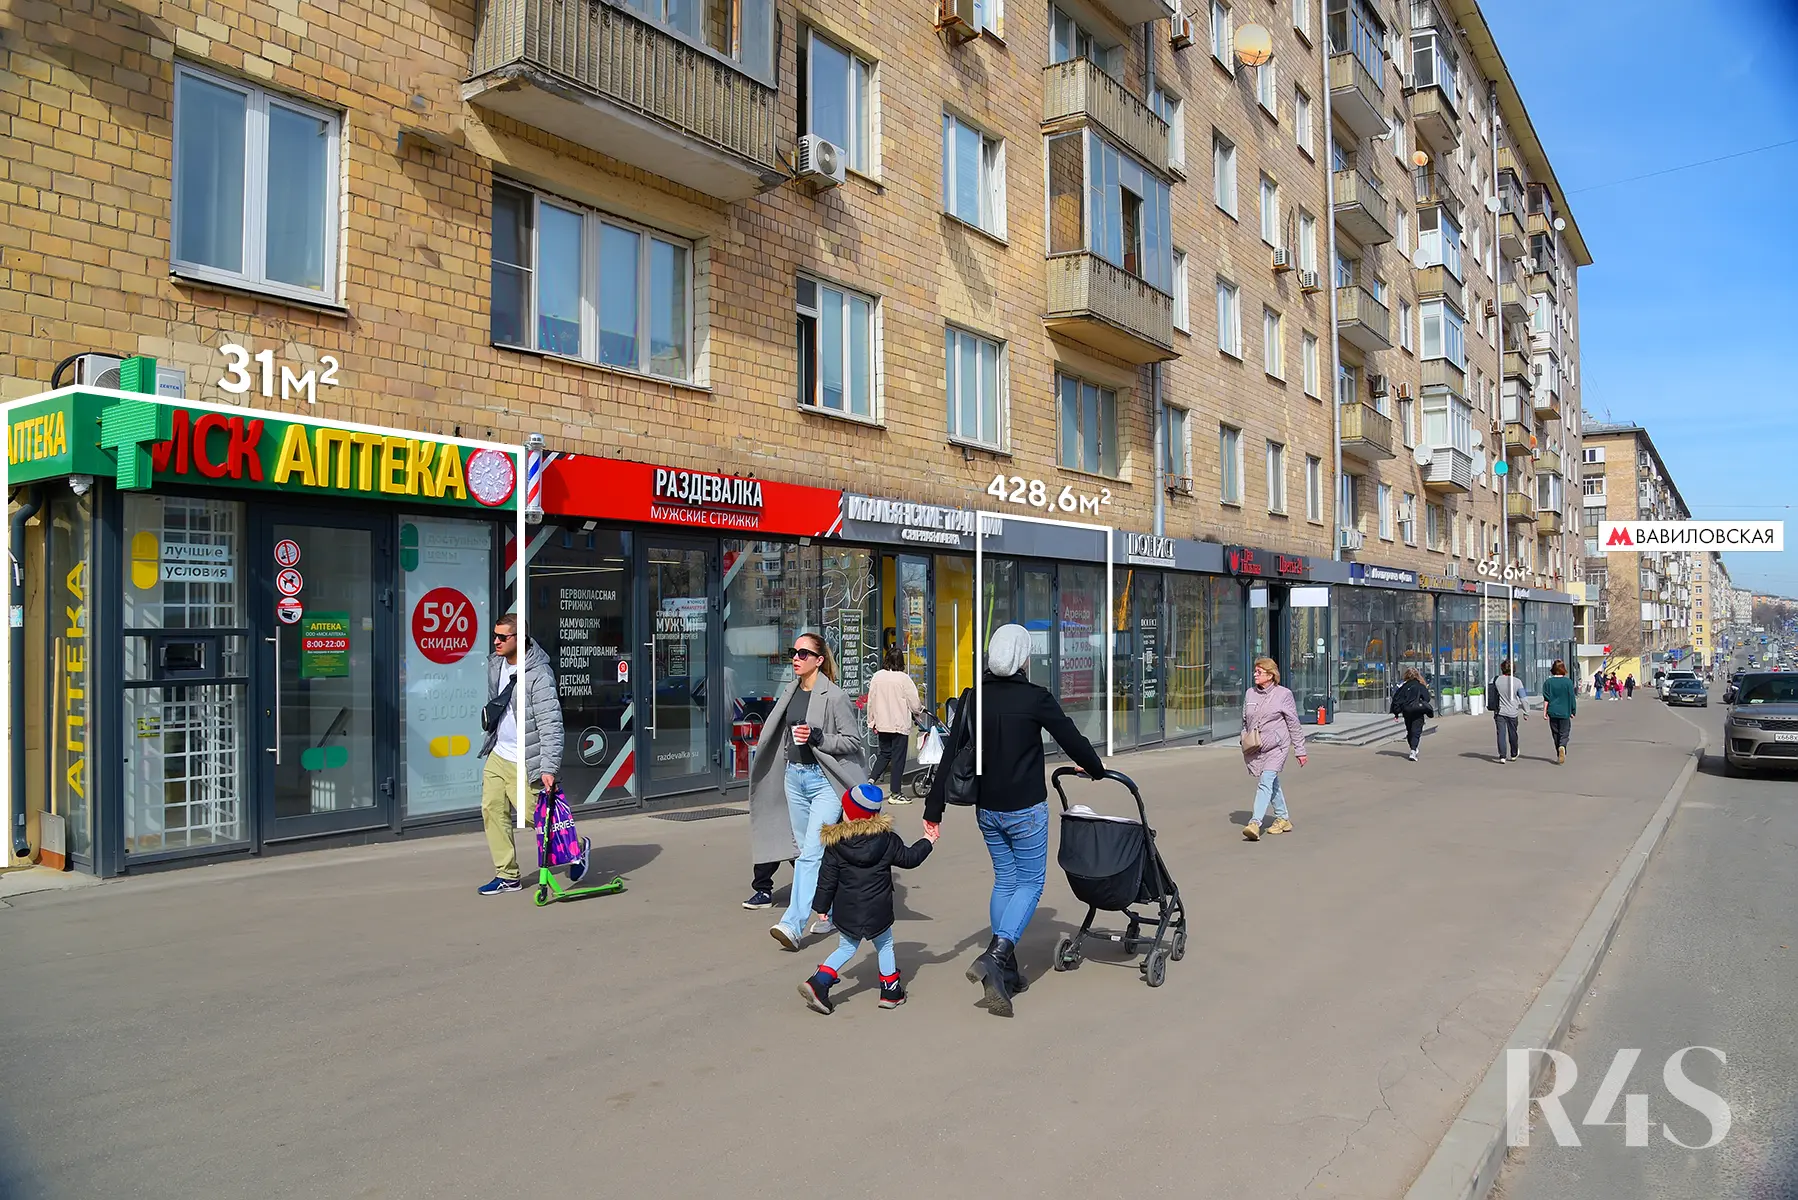 Продажа торговых помещений площадью 31 - 428.6 м2 в Москве:  Ленинский проспект, 78 R4S | Realty4Sale